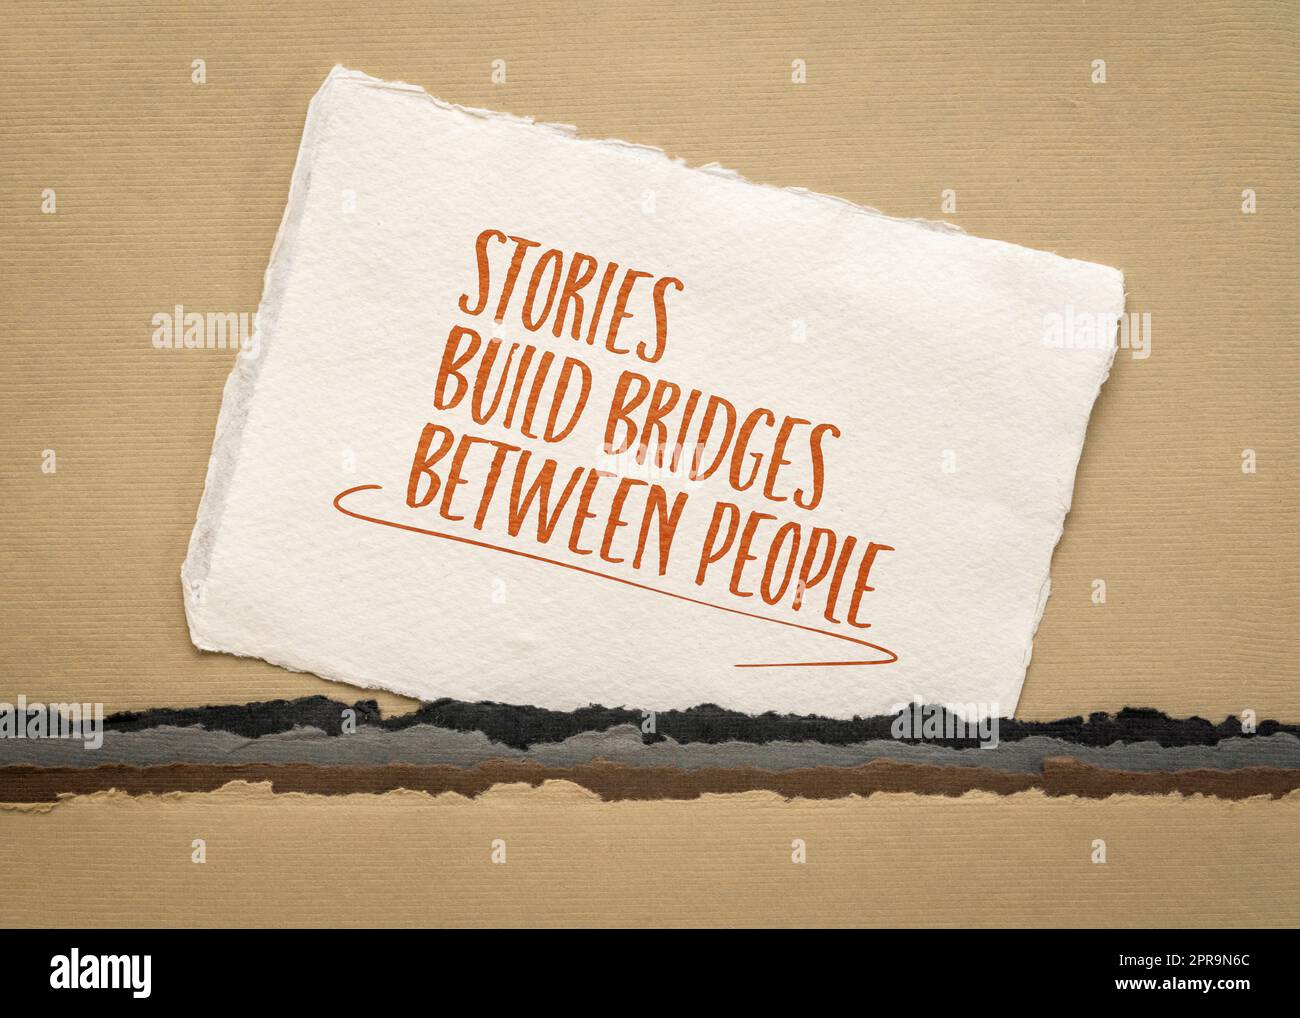 les histoires construisent des ponts entre les gens, message d'inspiration sur un papier d'art, concept de communication Banque D'Images